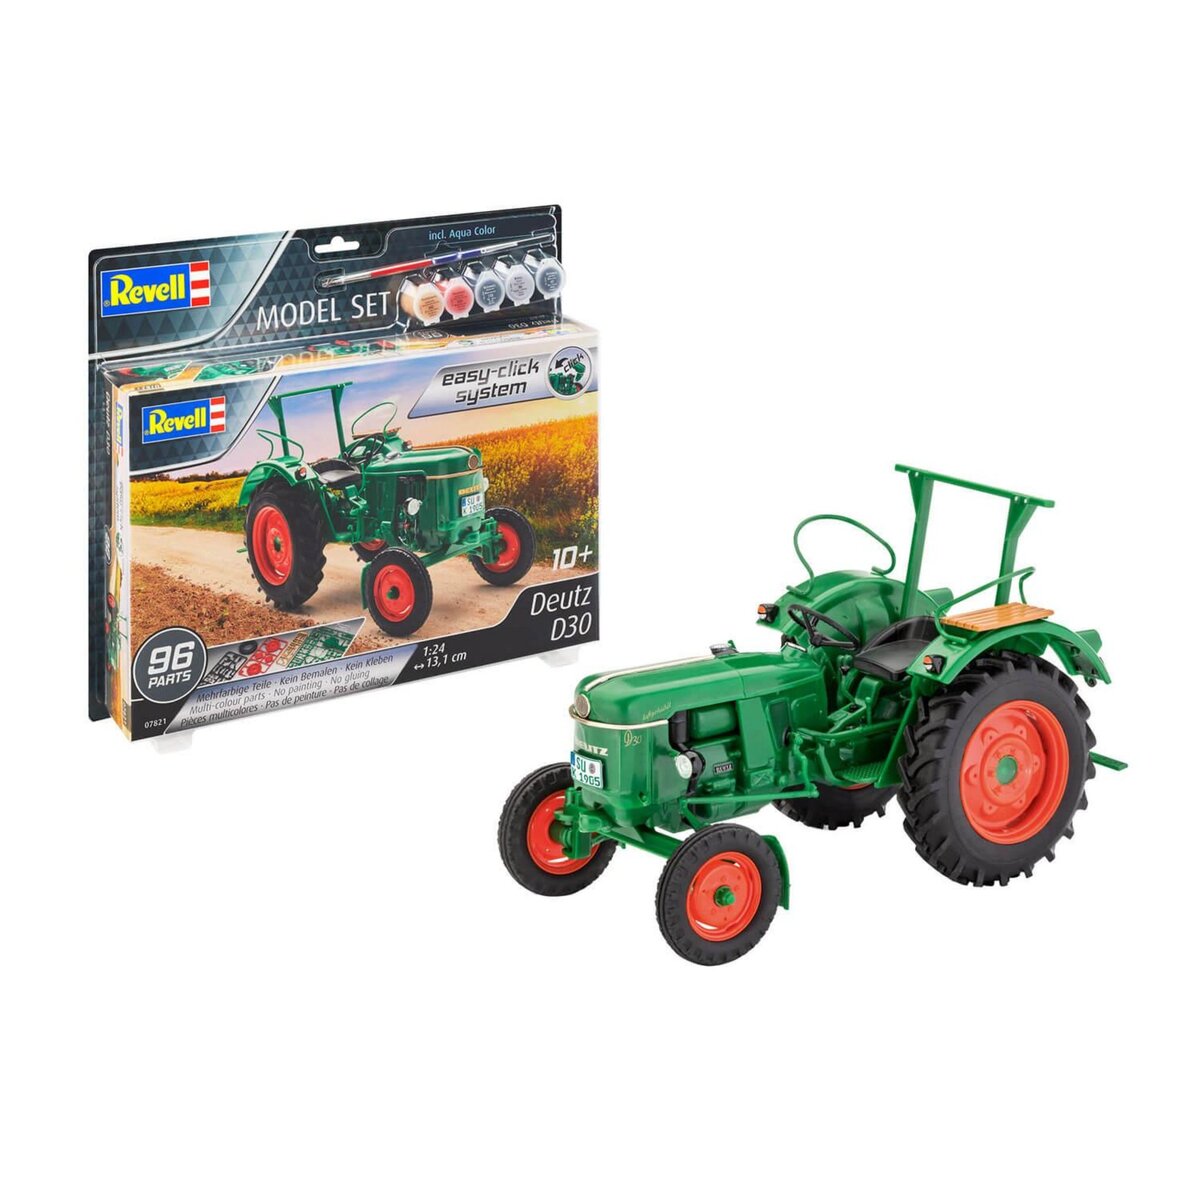 Revell Maquette tracteur : Model Set Easy-click : Deutz D30 pas cher 